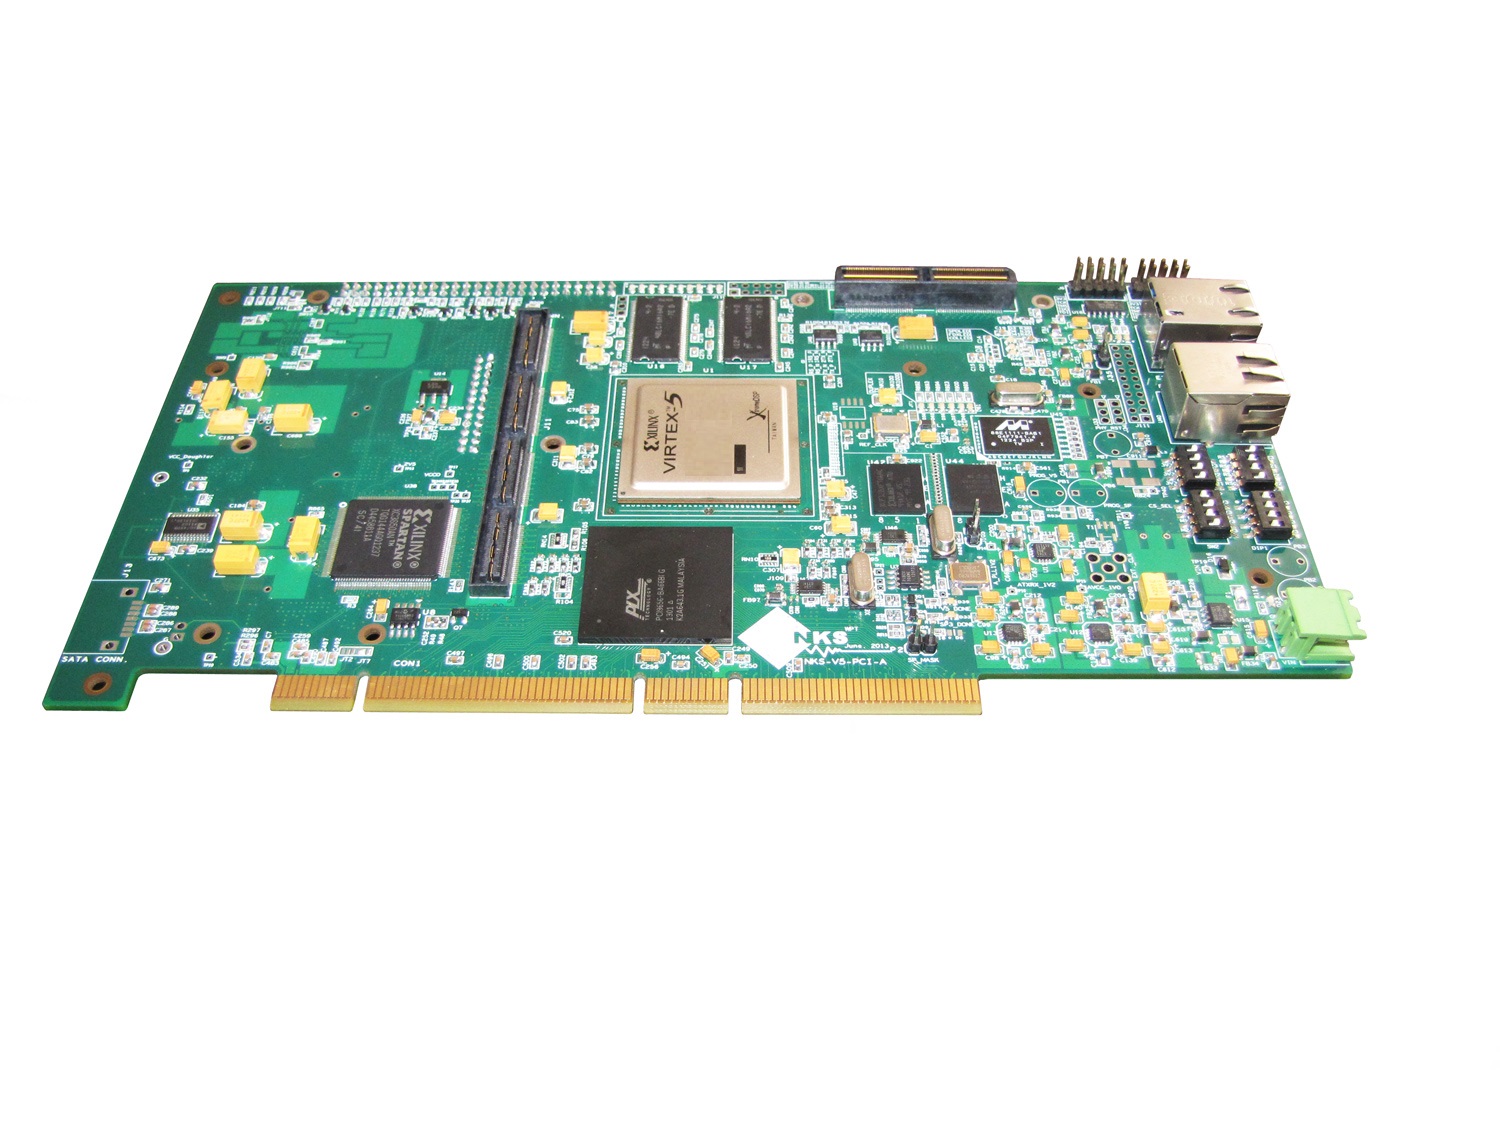 کارت PCI پردازشی Virtex-5